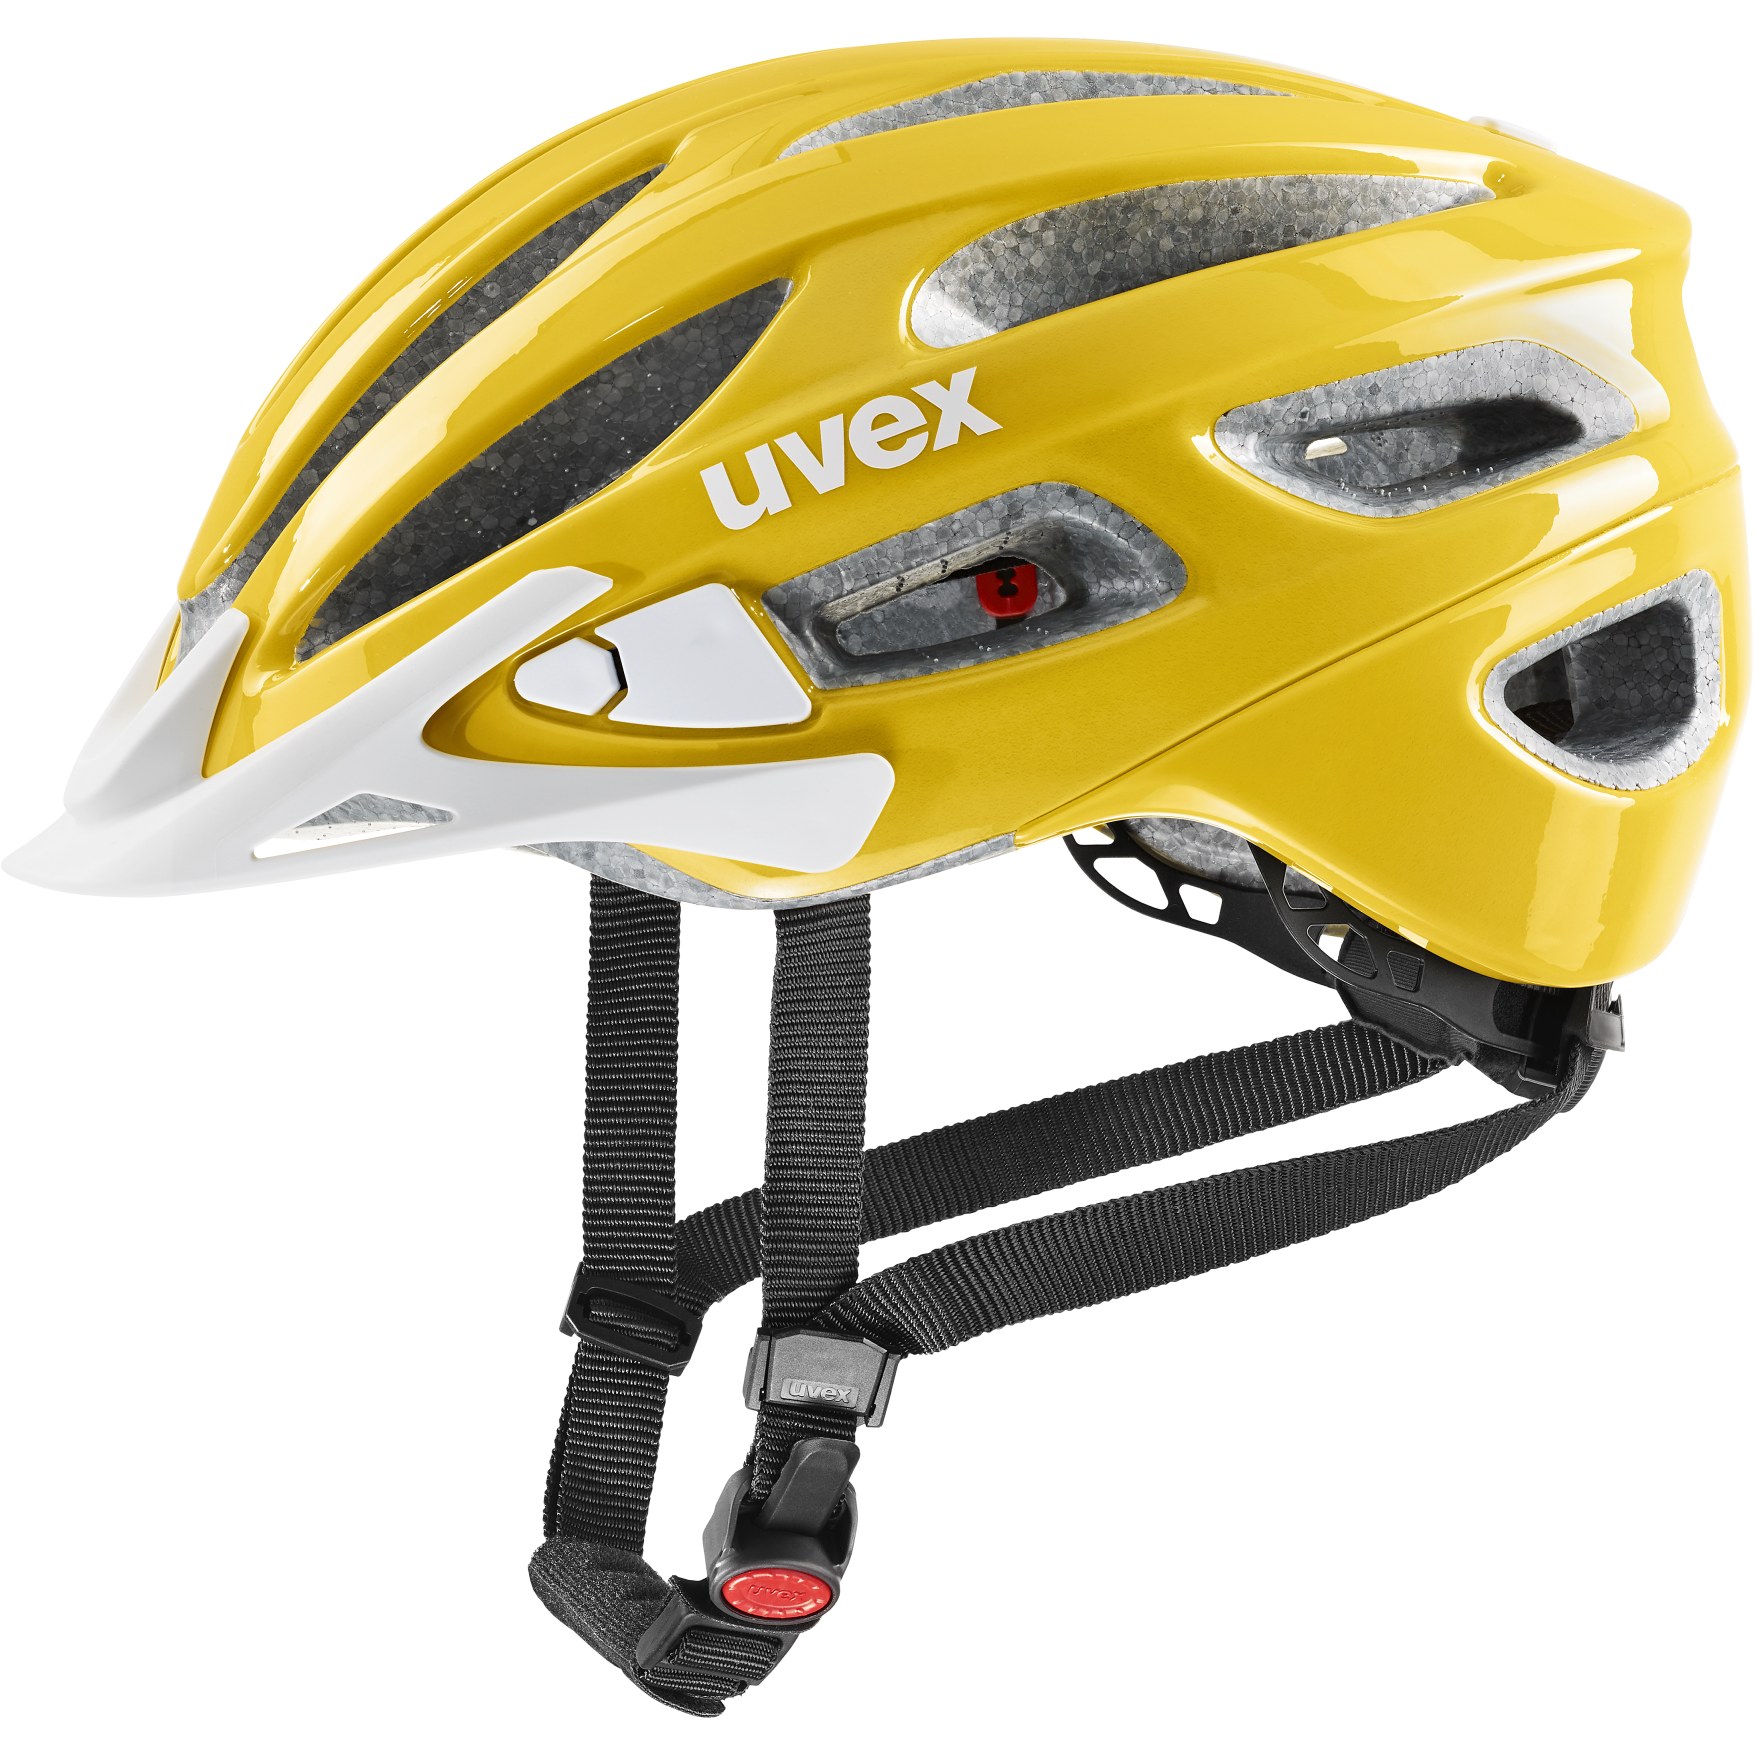 Produktbild von Uvex true Helm - sunbee-white